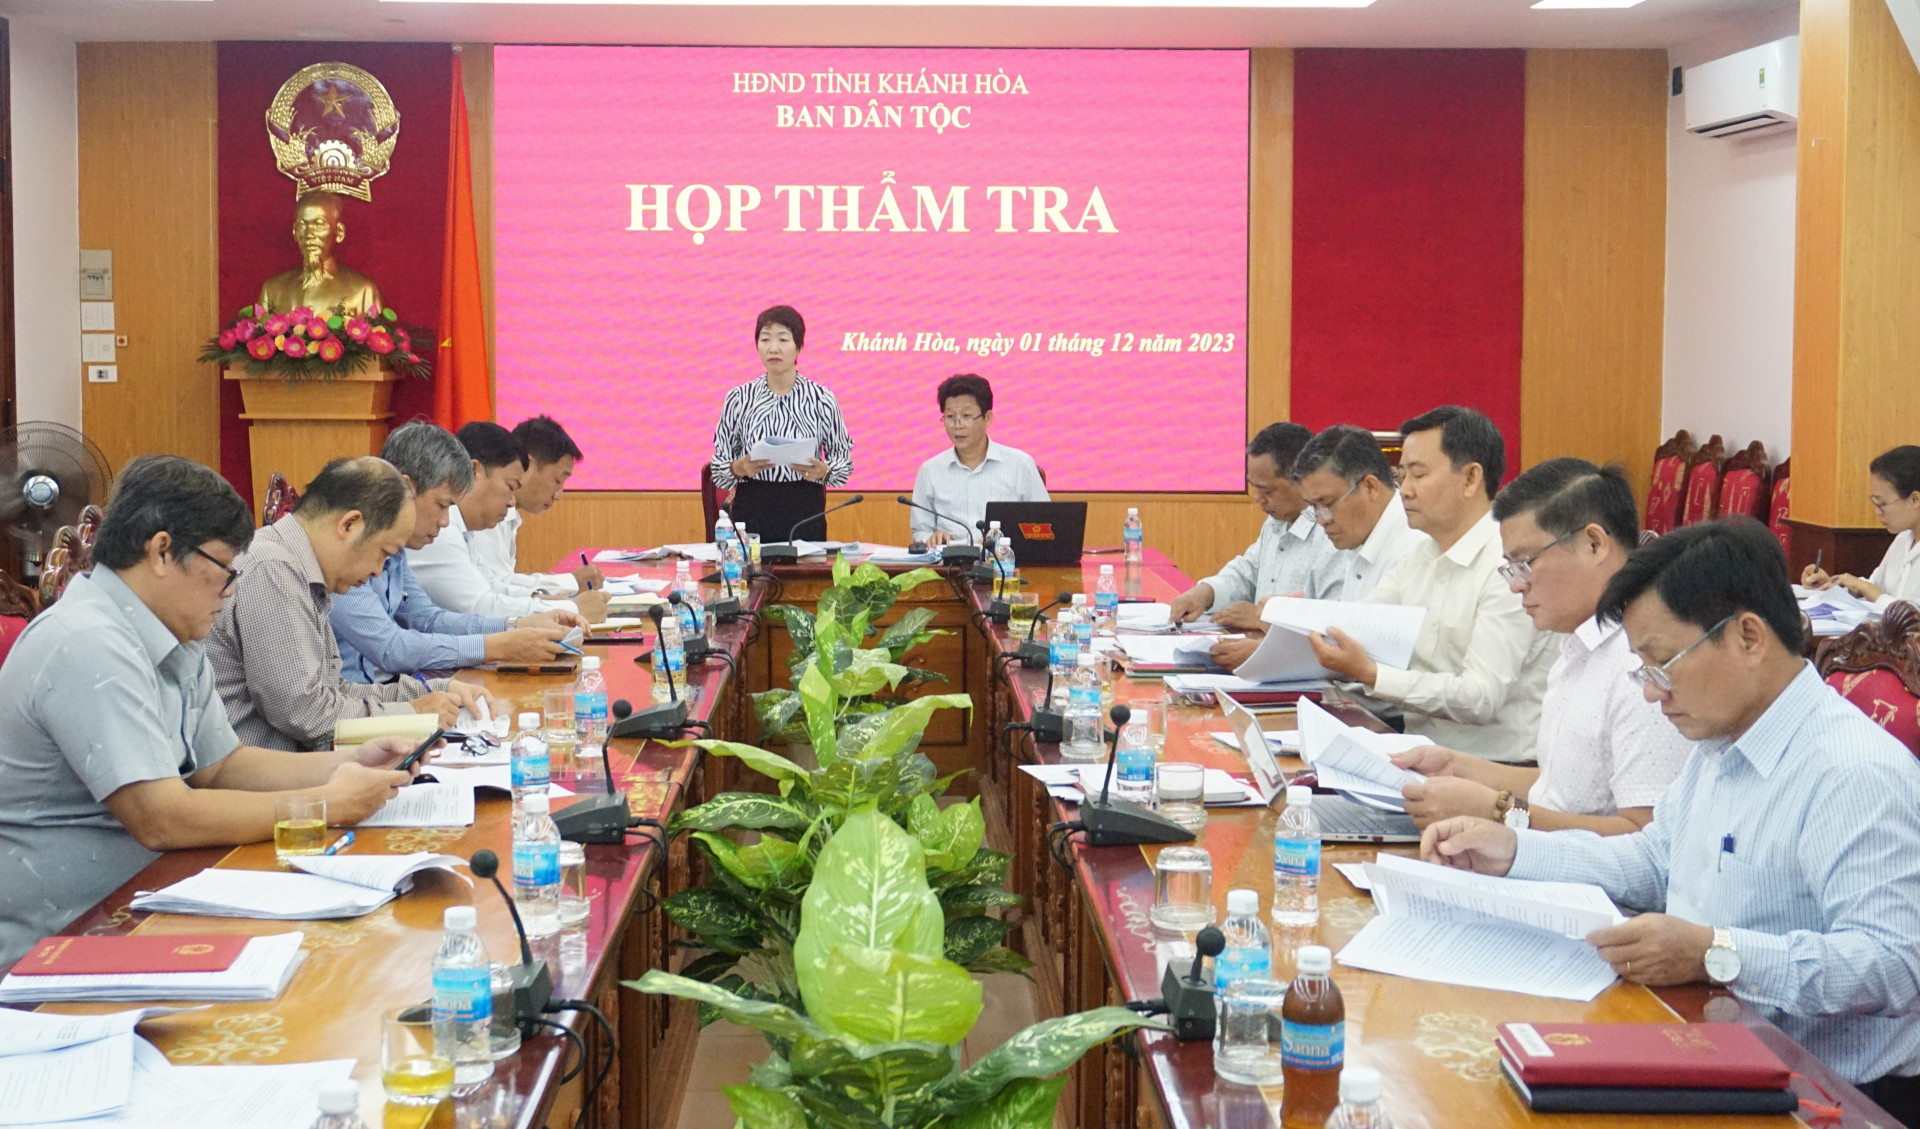 Quang cảnh tại cuộc họp thẩm tra của Ban Dân tộc HĐND tỉnh